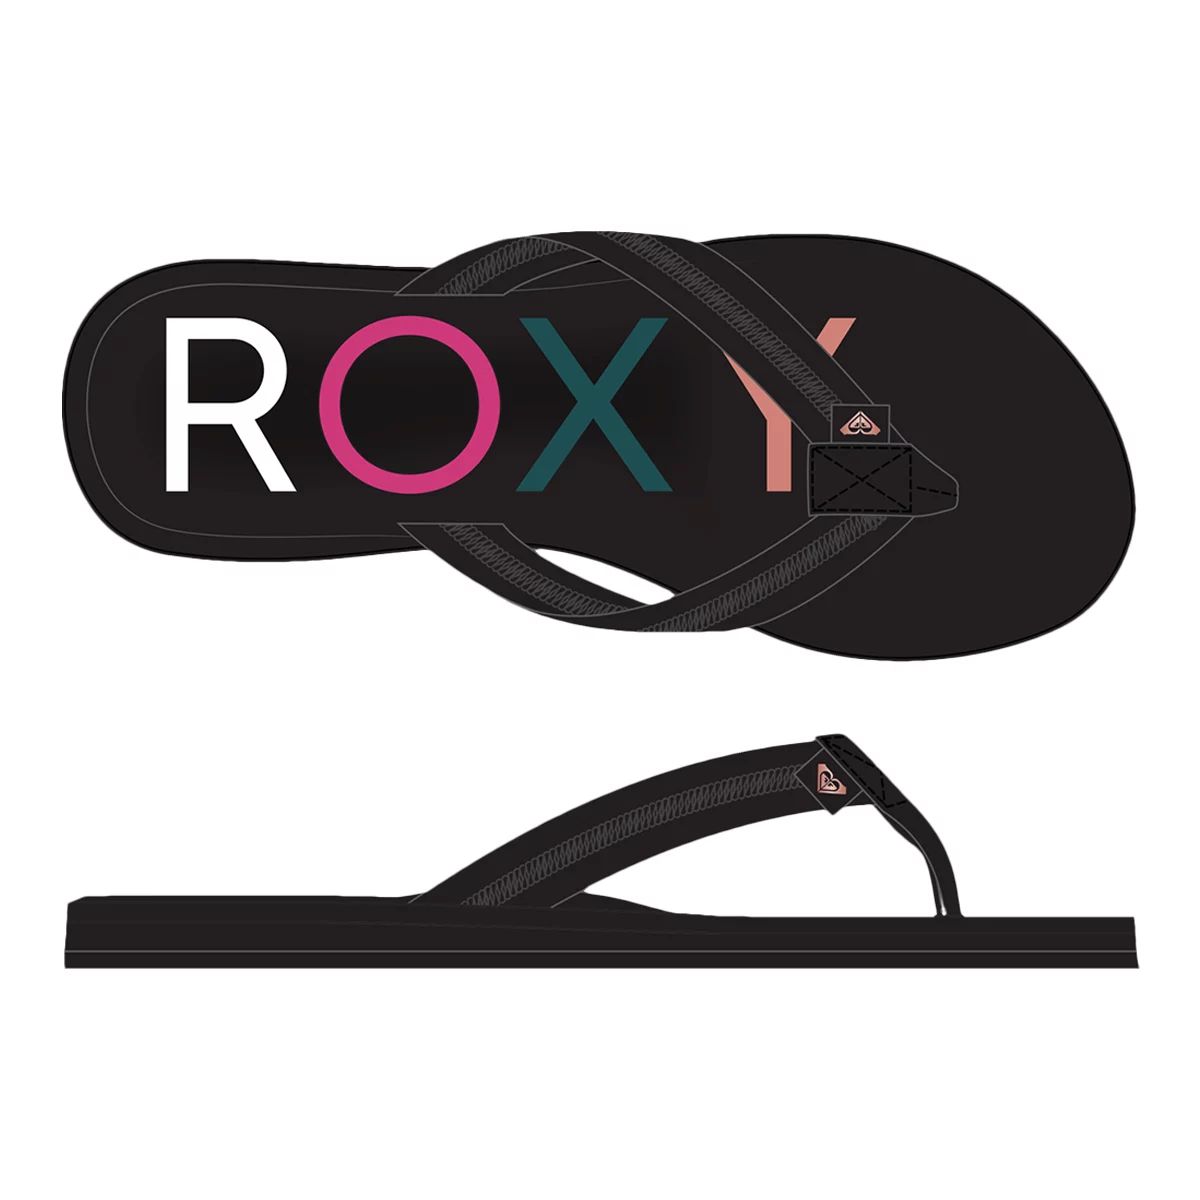 NEW! Women's ROXY 'Bermuda II' Flip Flop Sandals, 7 Black 9 Navy